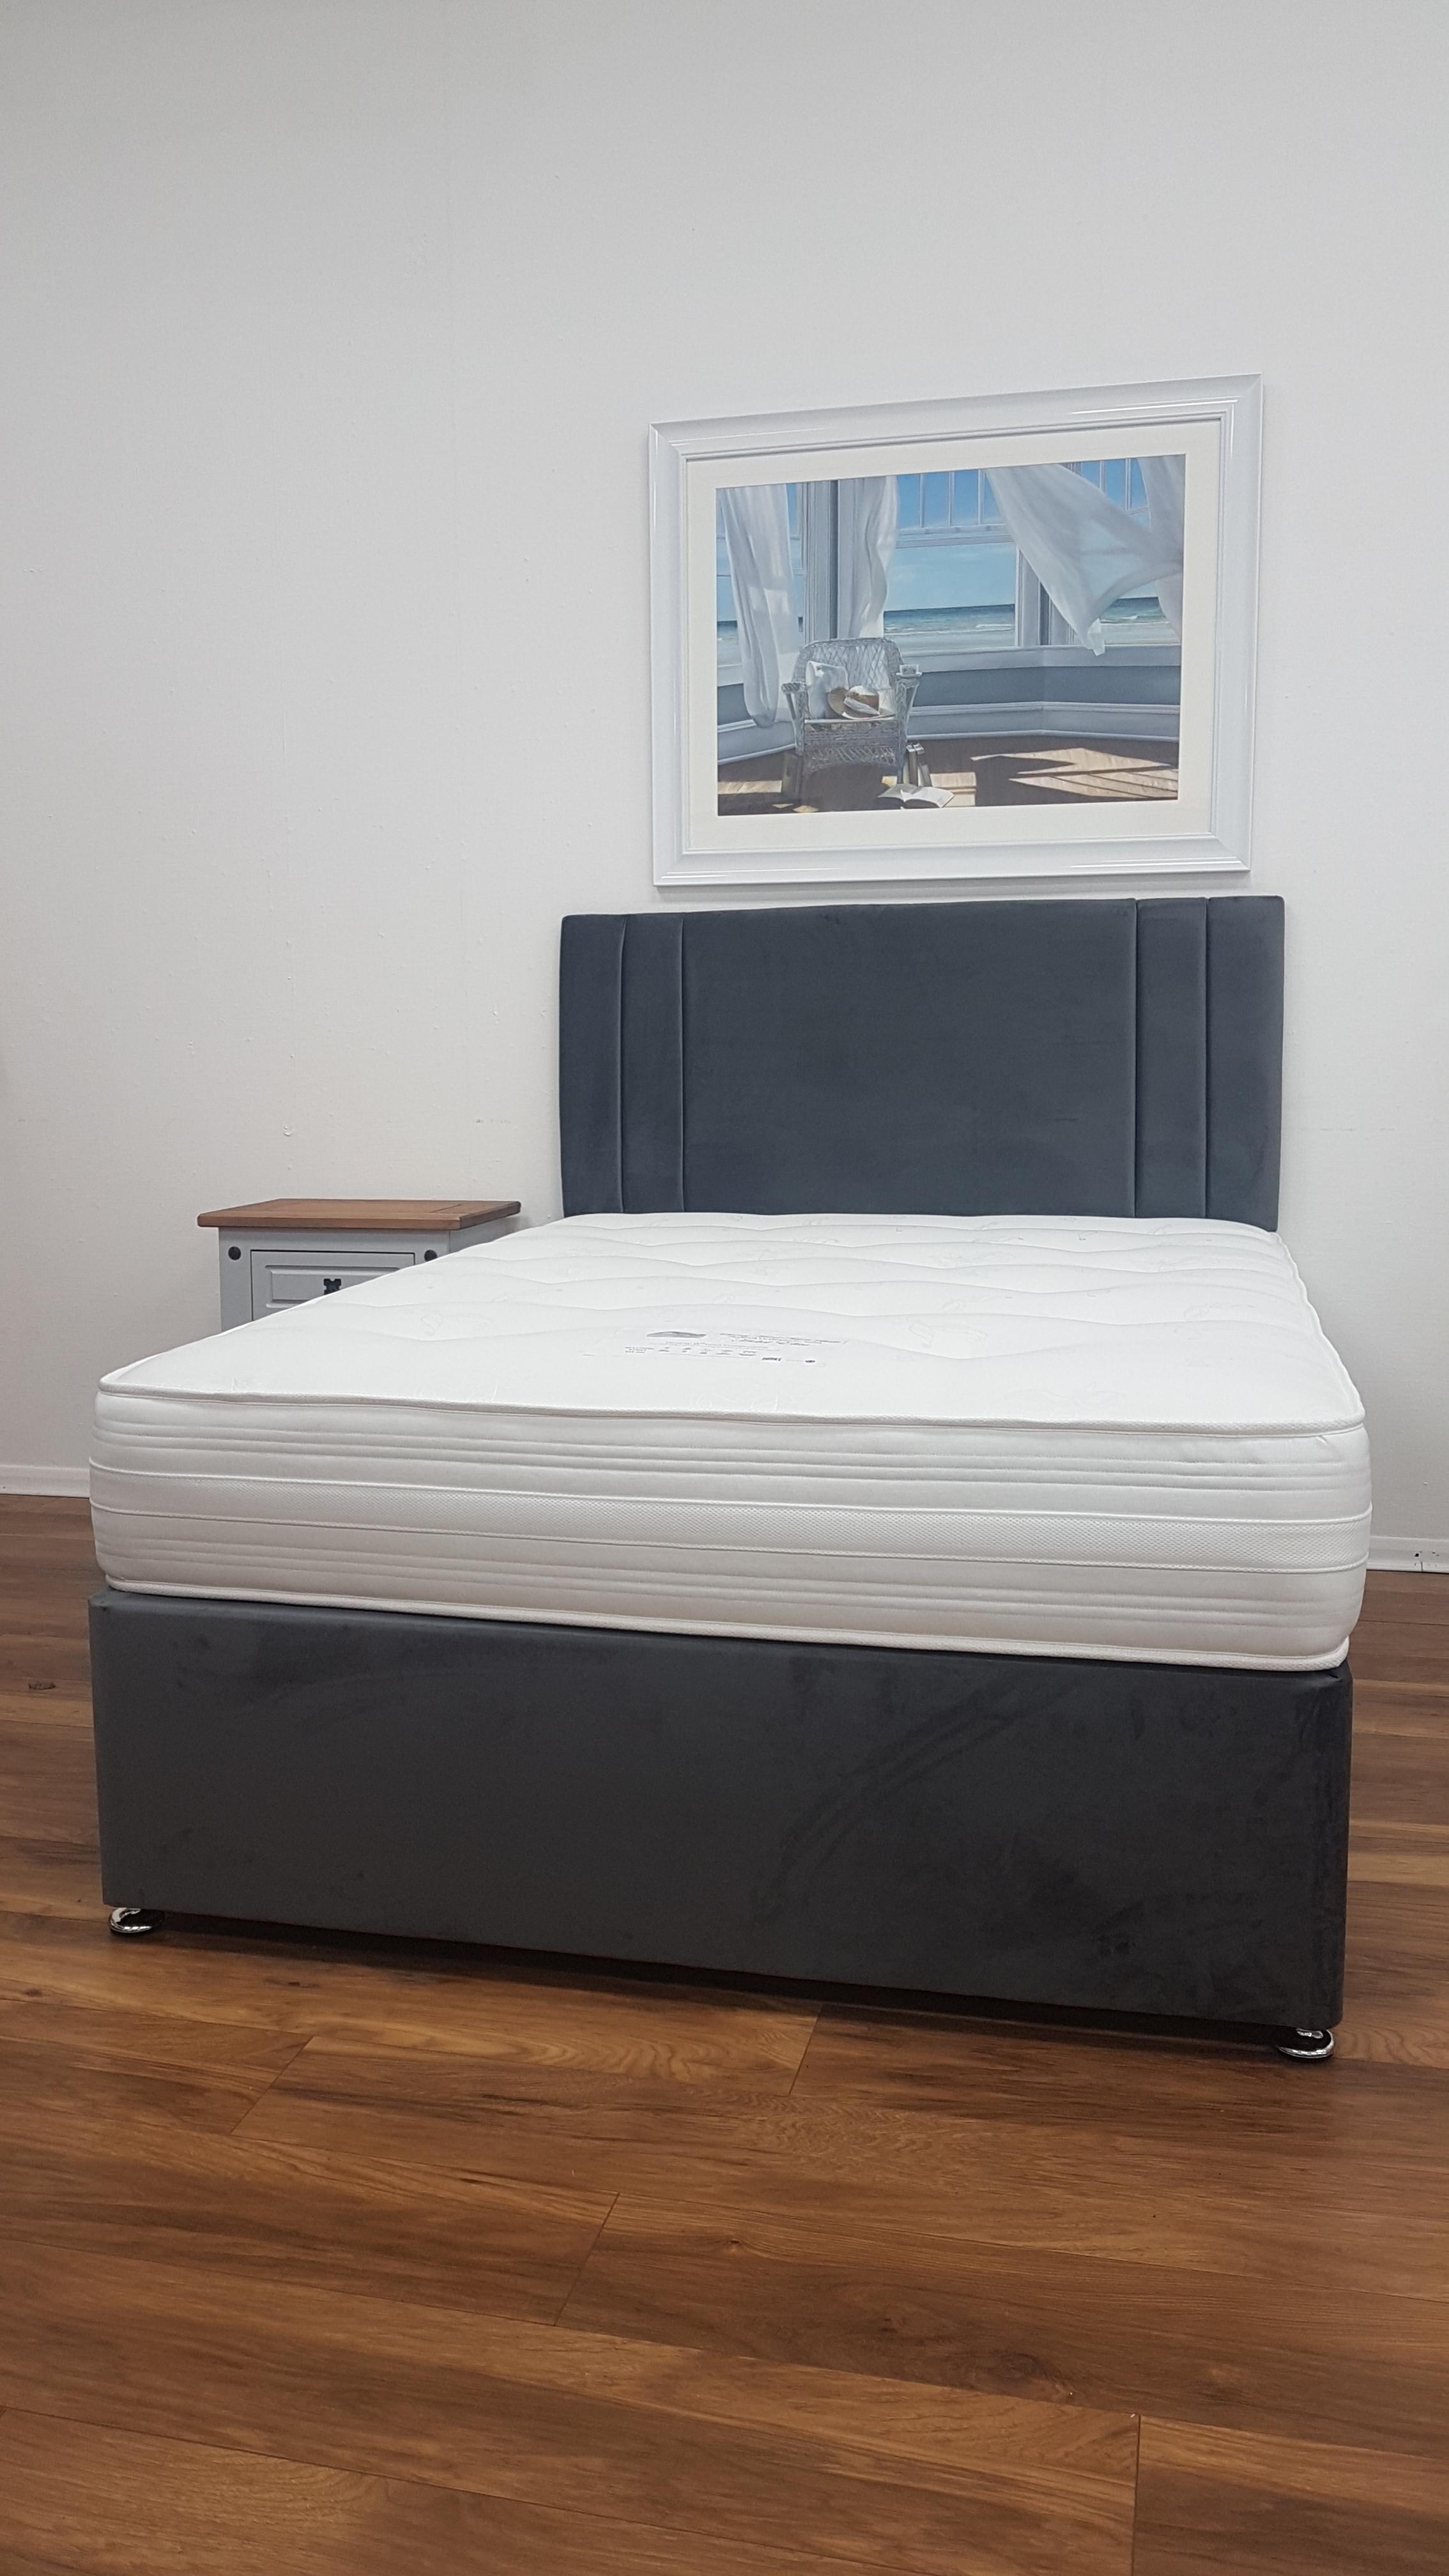 Shalford Hotel Elite 2020 mattress